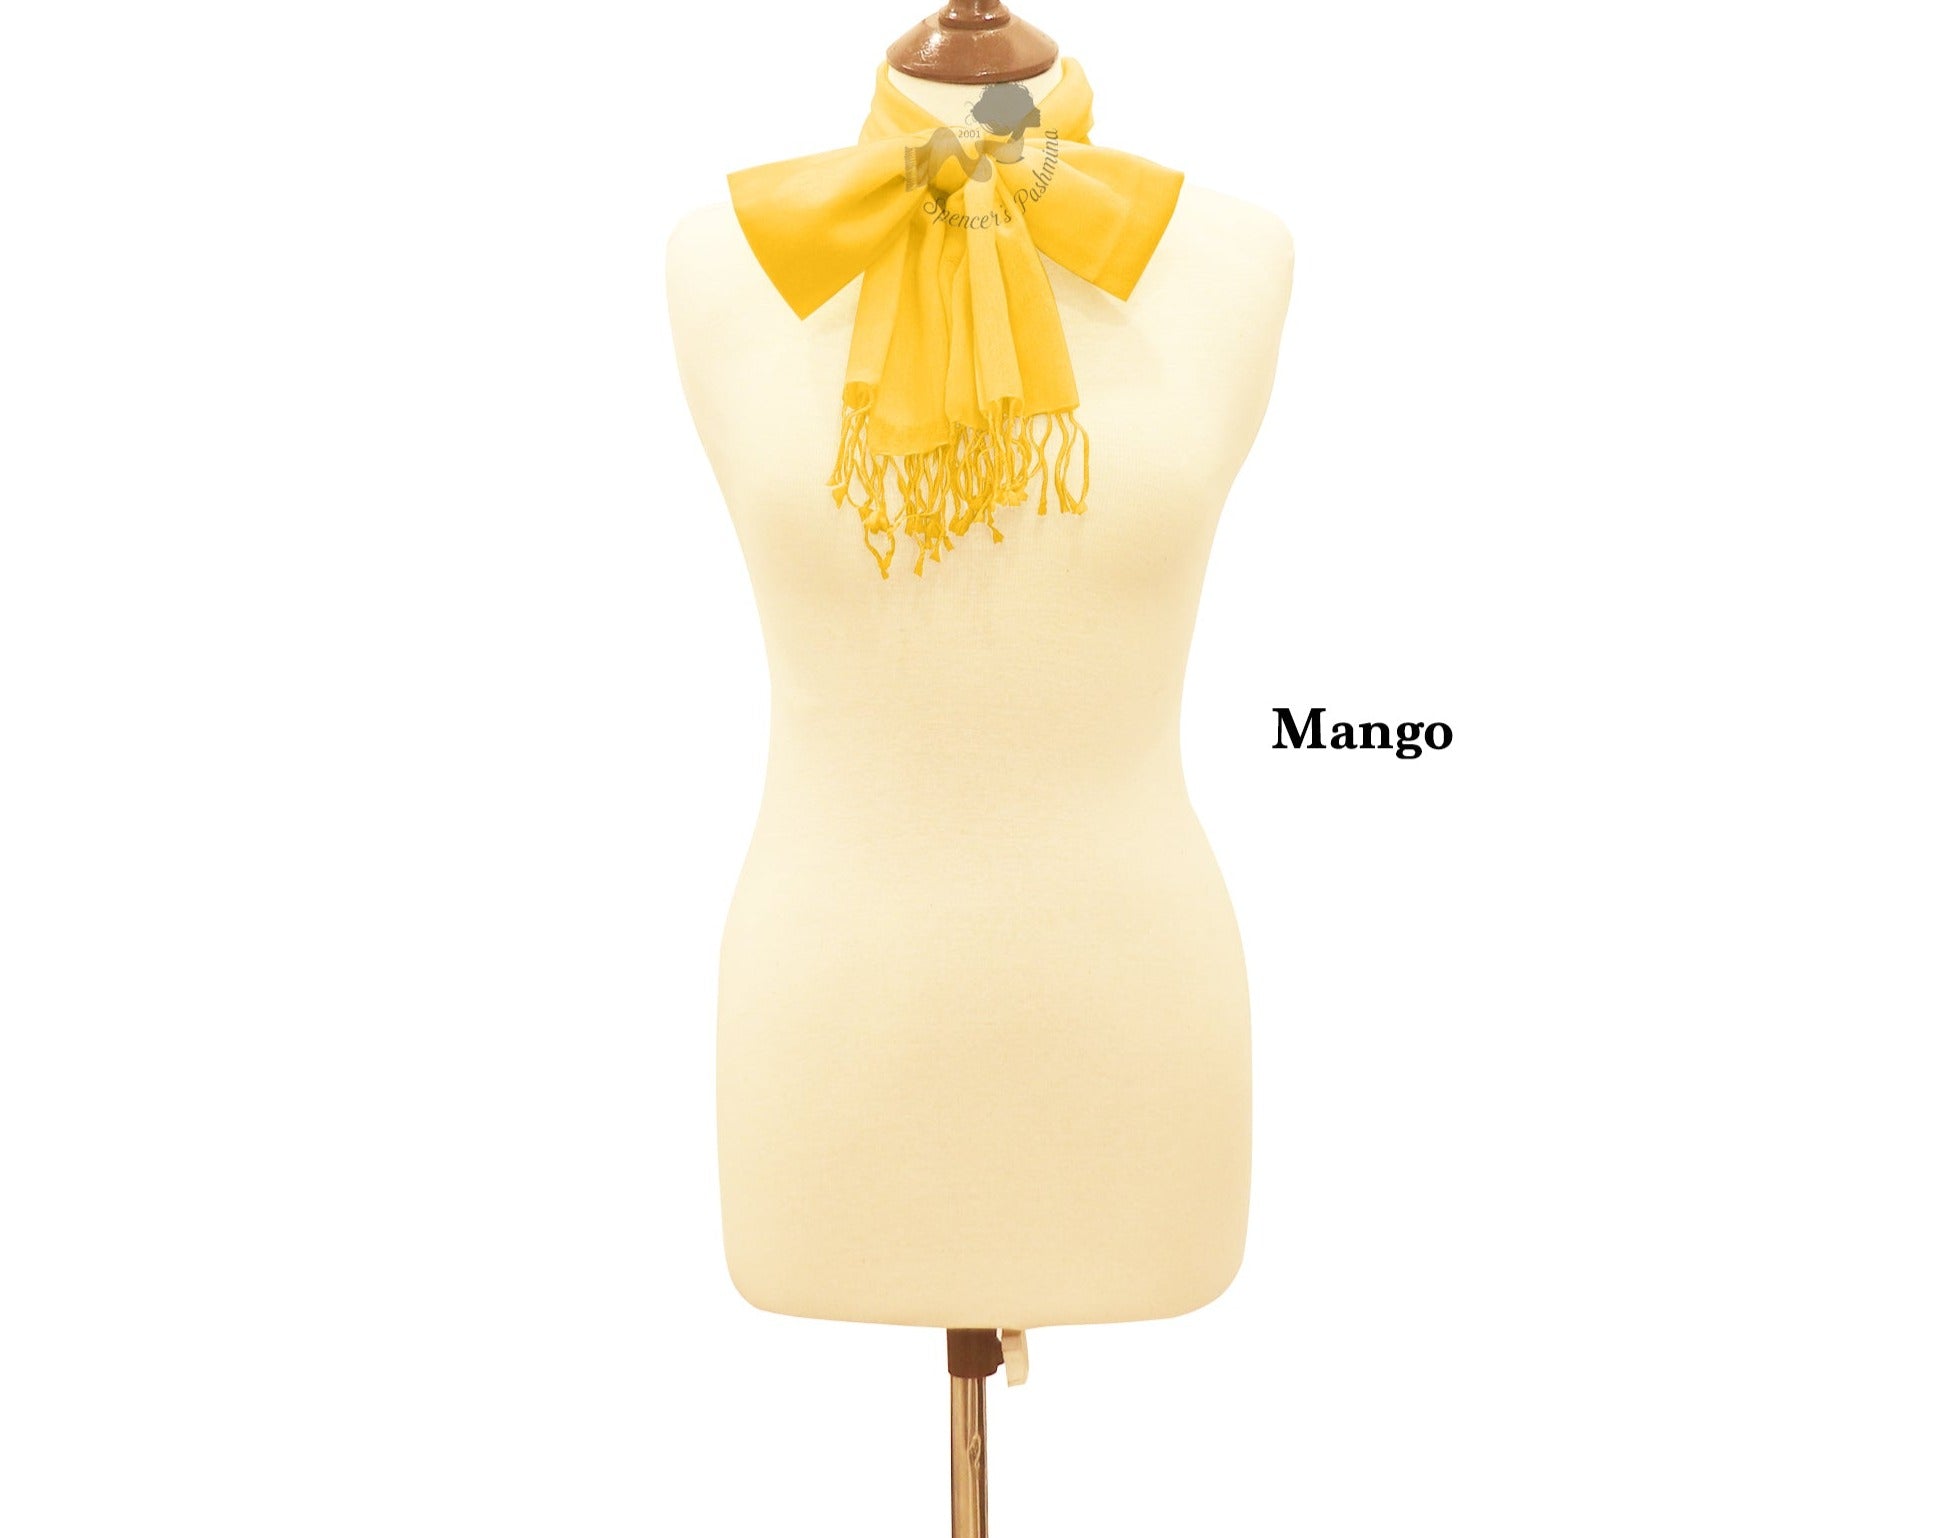 Mango scarf ring pashmina.